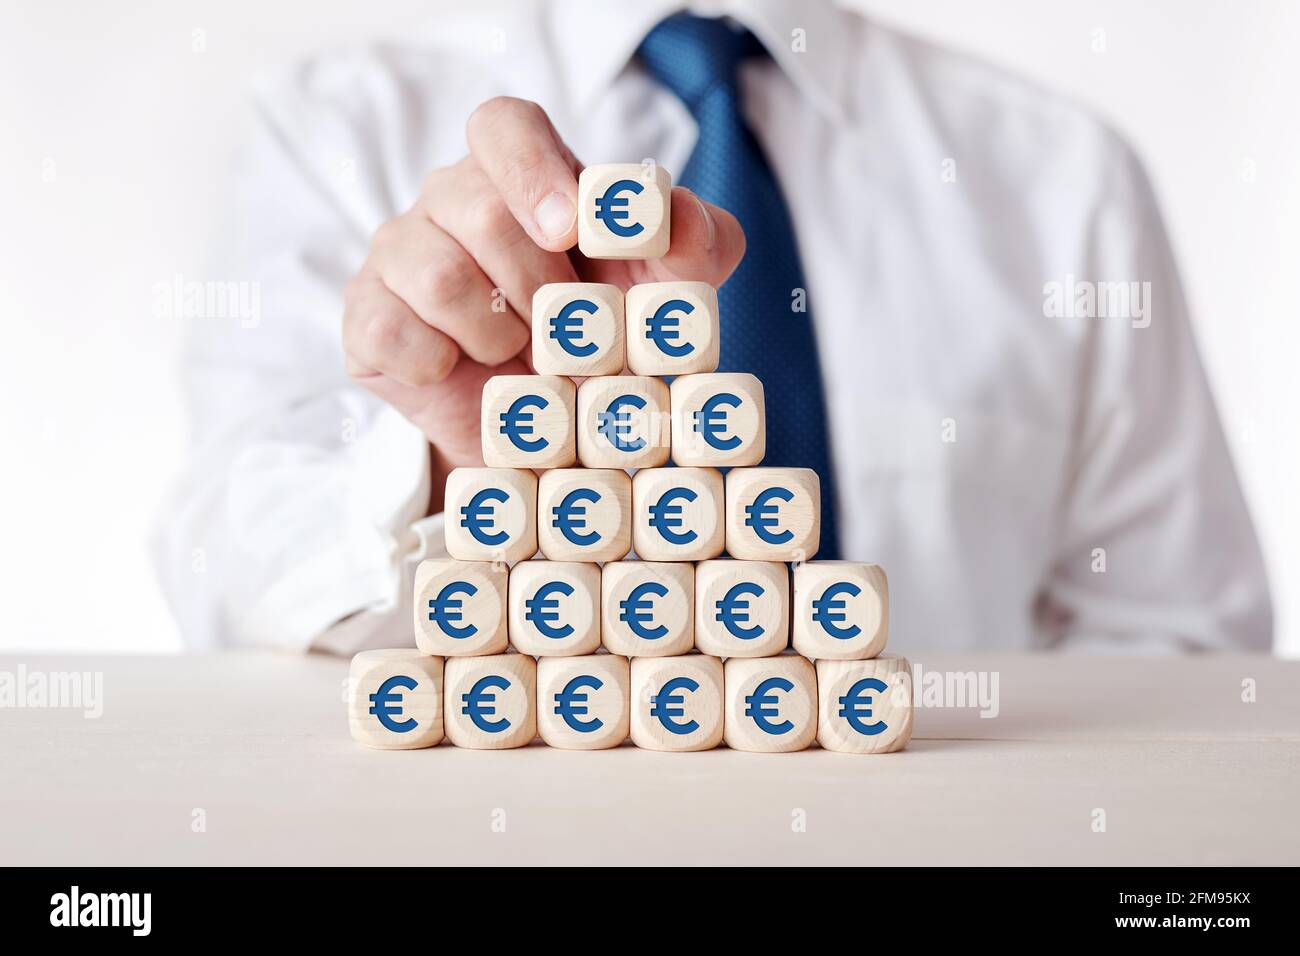 Investimento finanziario, risparmio, tasse o aumento dei profitti concetto. L'uomo d'affari mette i cubetti di legno a più livelli con il simbolo del denaro dell'euro. Foto Stock